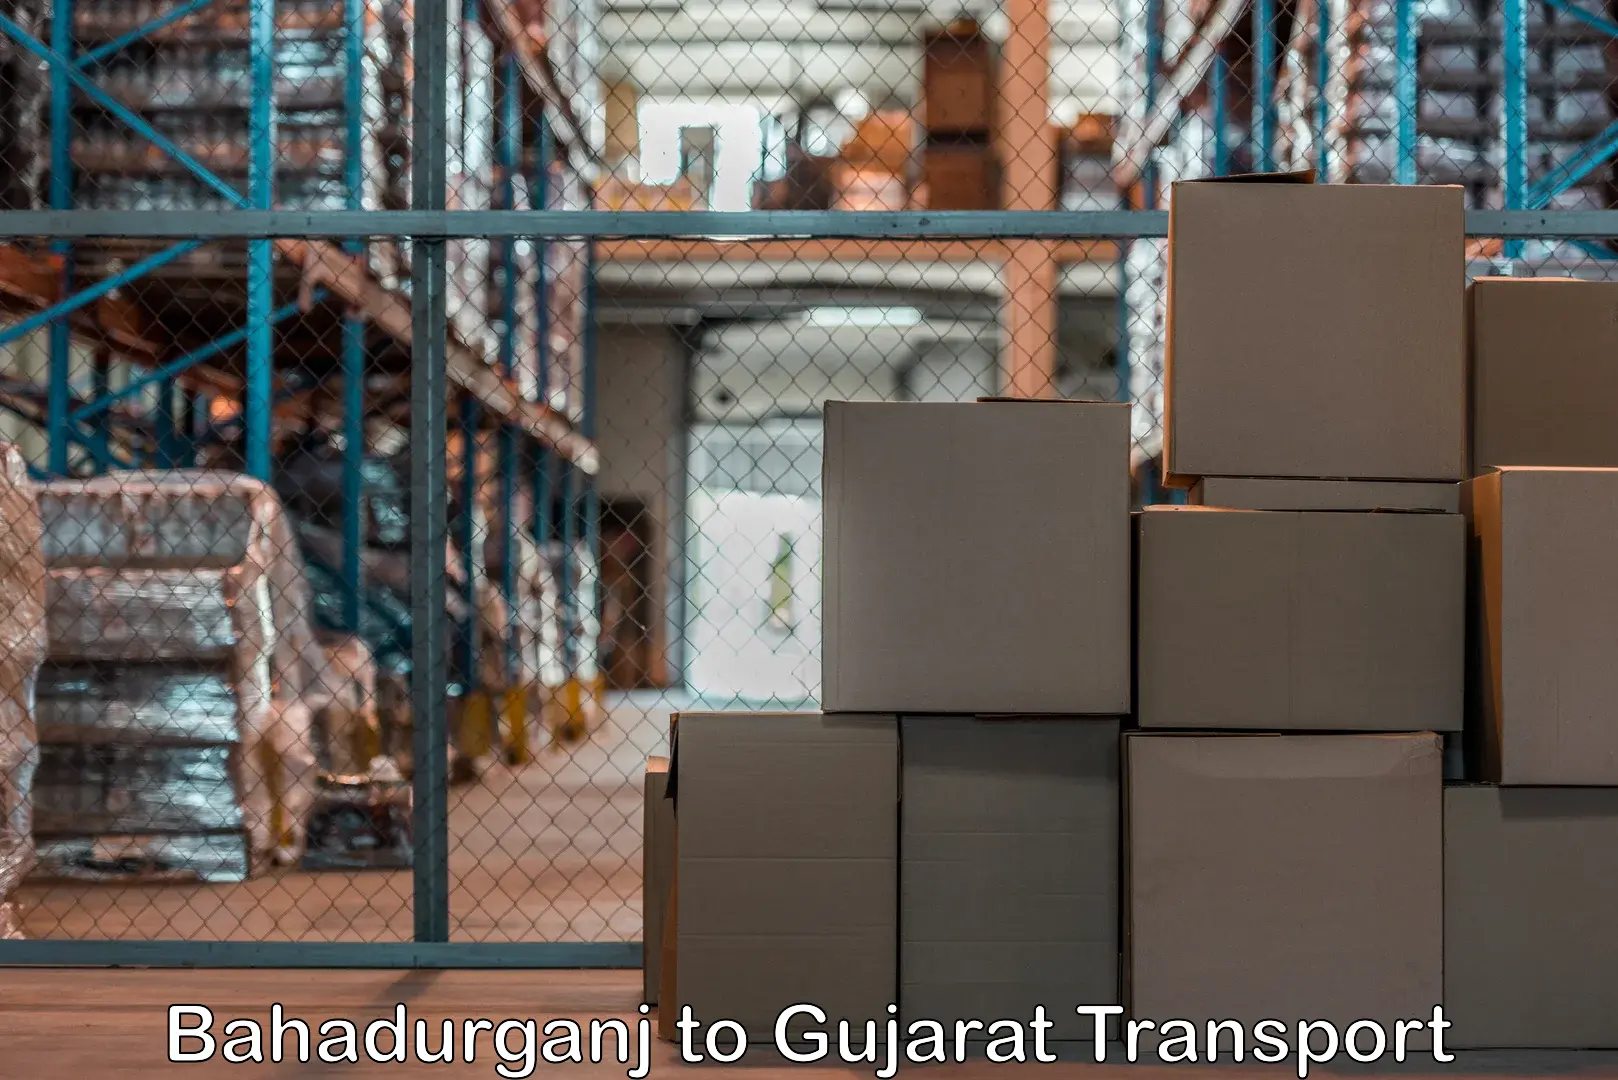 Transport shared services Bahadurganj to Dahegam